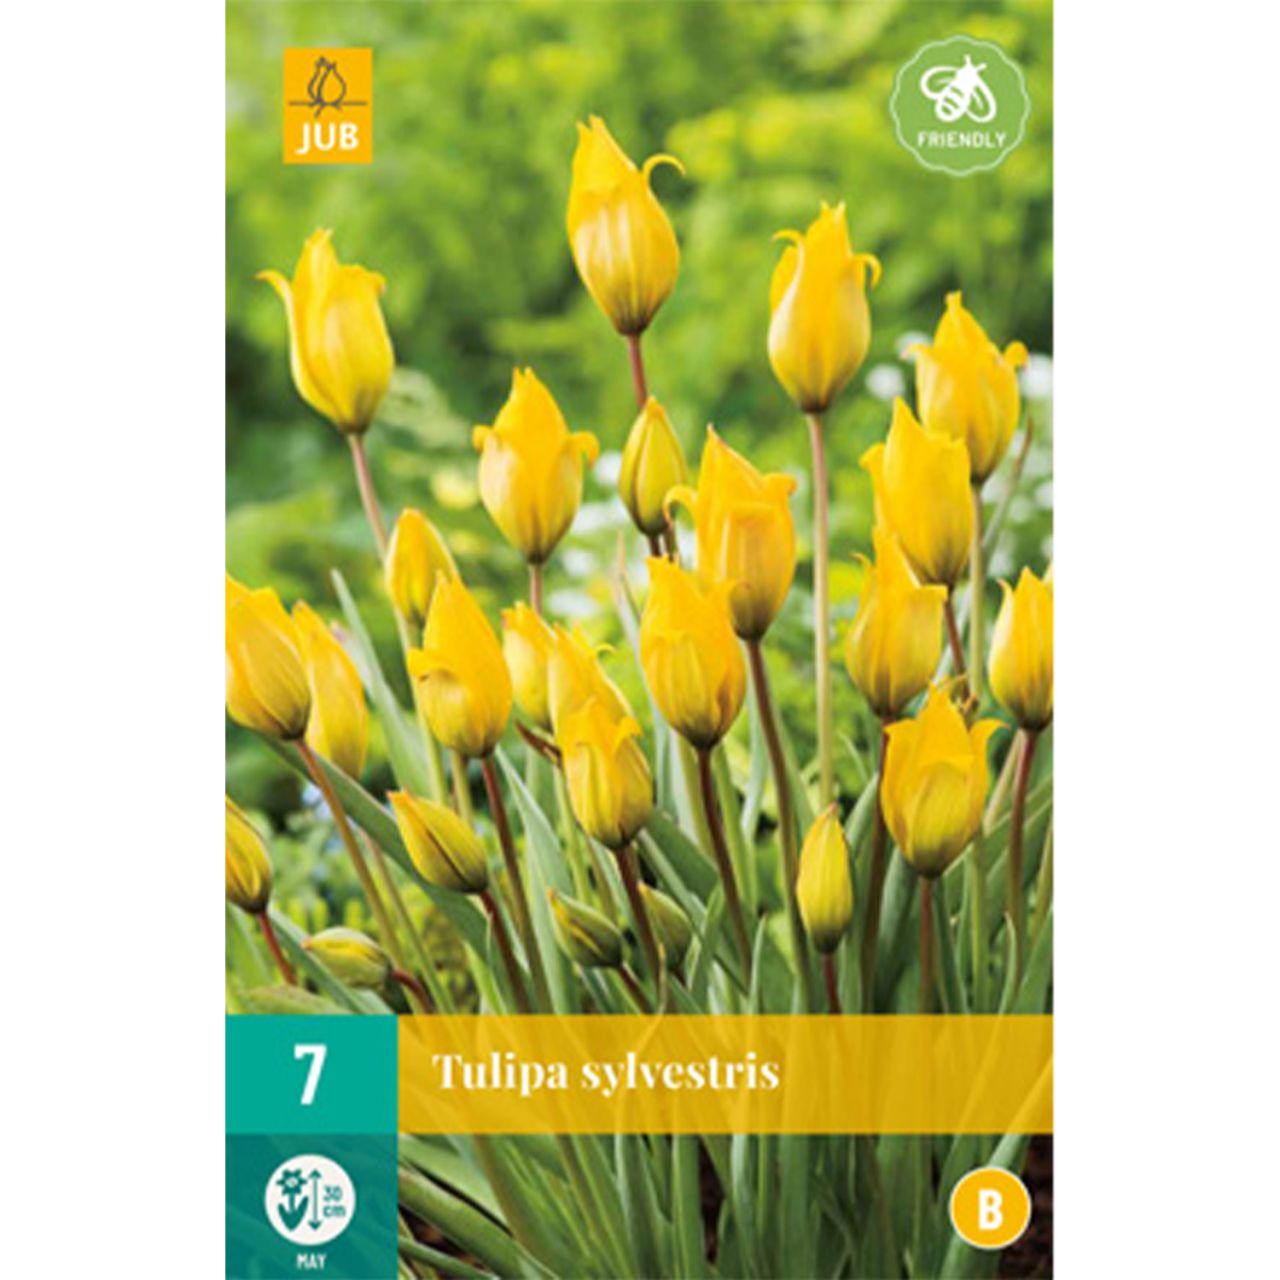 Kategorie <b>Herbst-Blumenzwiebeln </b> - Weinbergtulpe 'Sylvestris' - 7 Stück - Tulipa Sylvestris